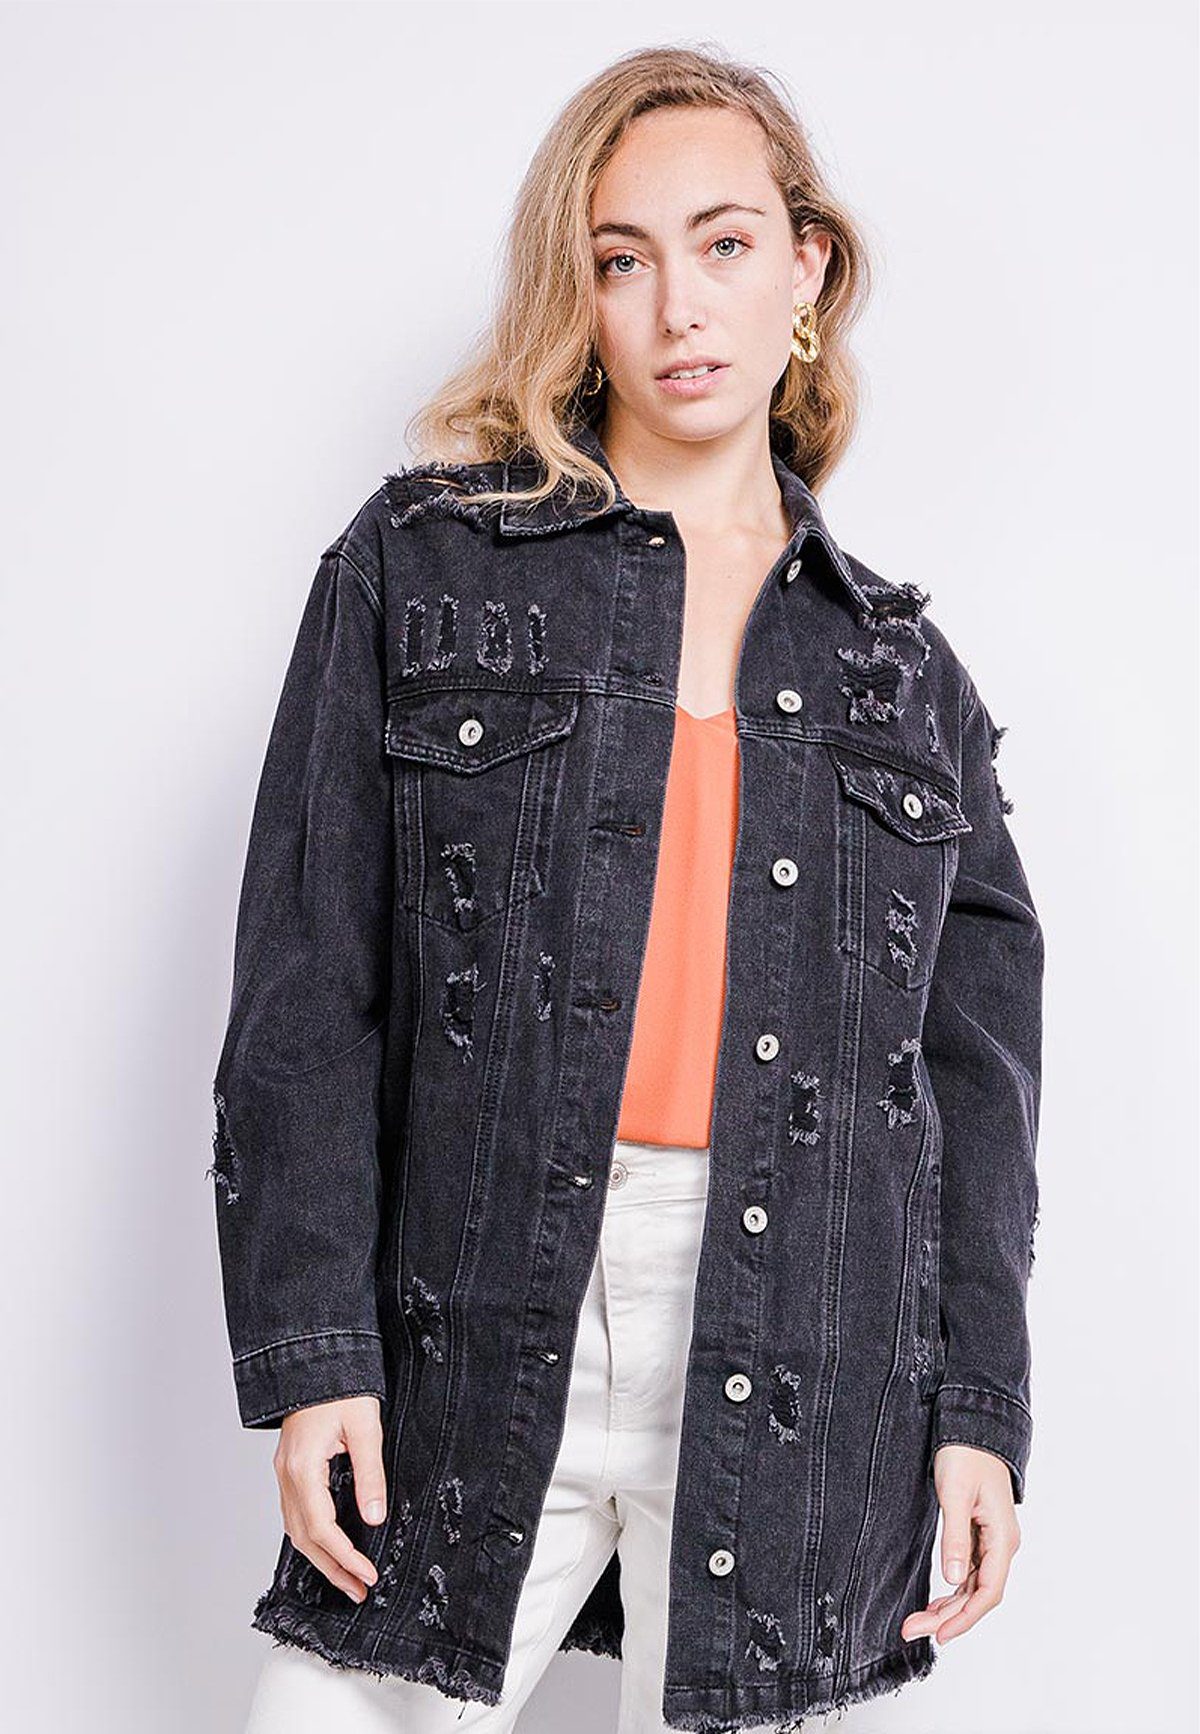 HELLO MISS Jeansjacke »Lange Denim Jeans Jacke mit Distressed Fransen  Design« 4095 in Schwarz online kaufen | OTTO